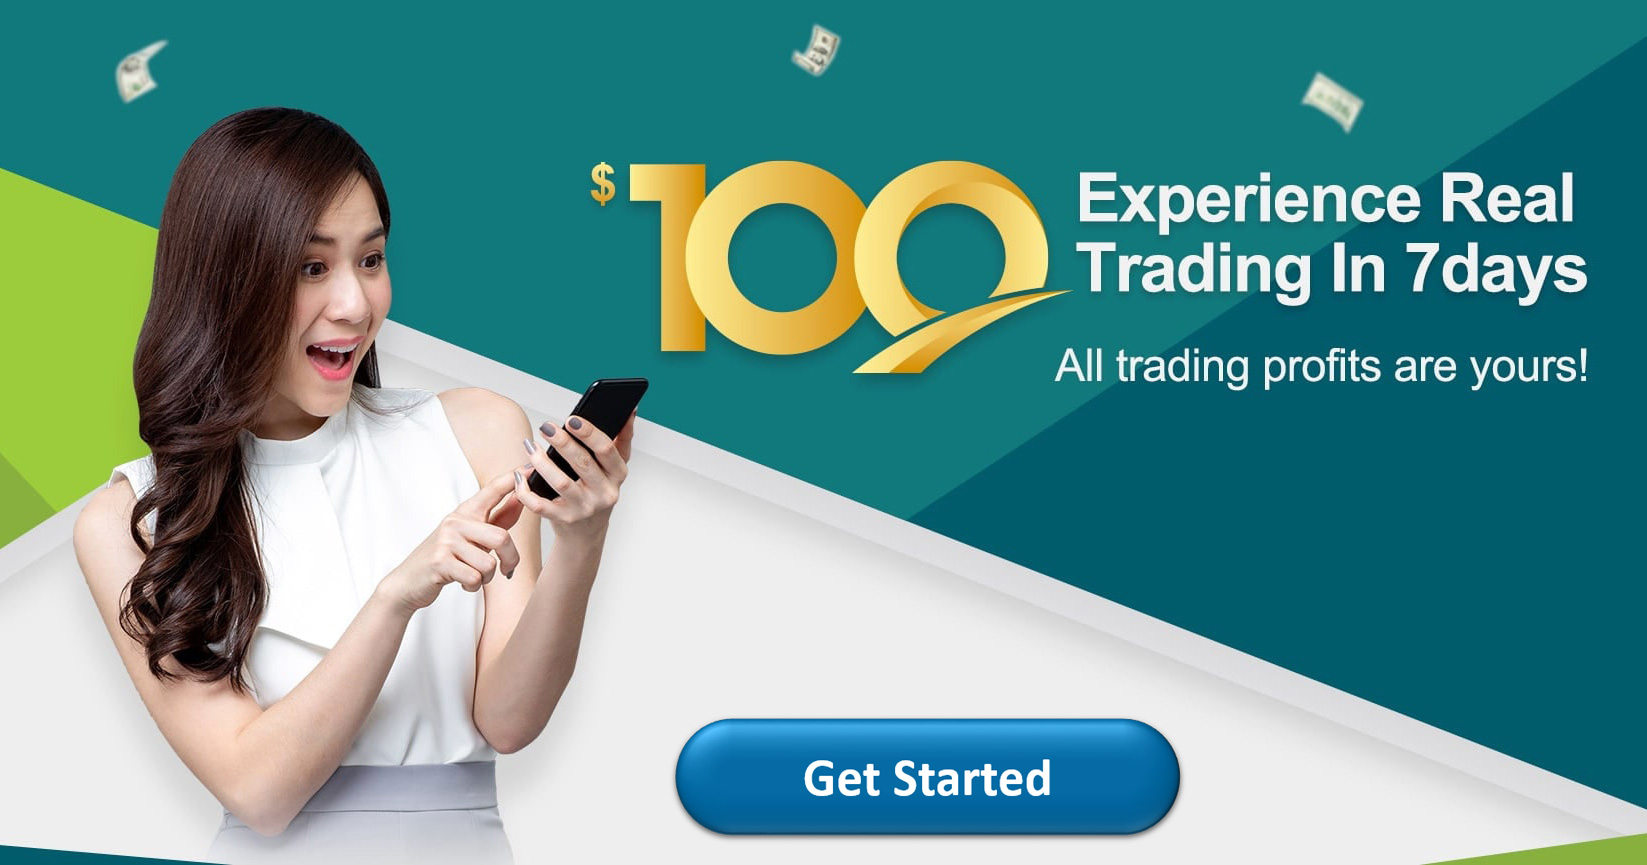 HXFX Global $100 Free New Account Opening Bonus